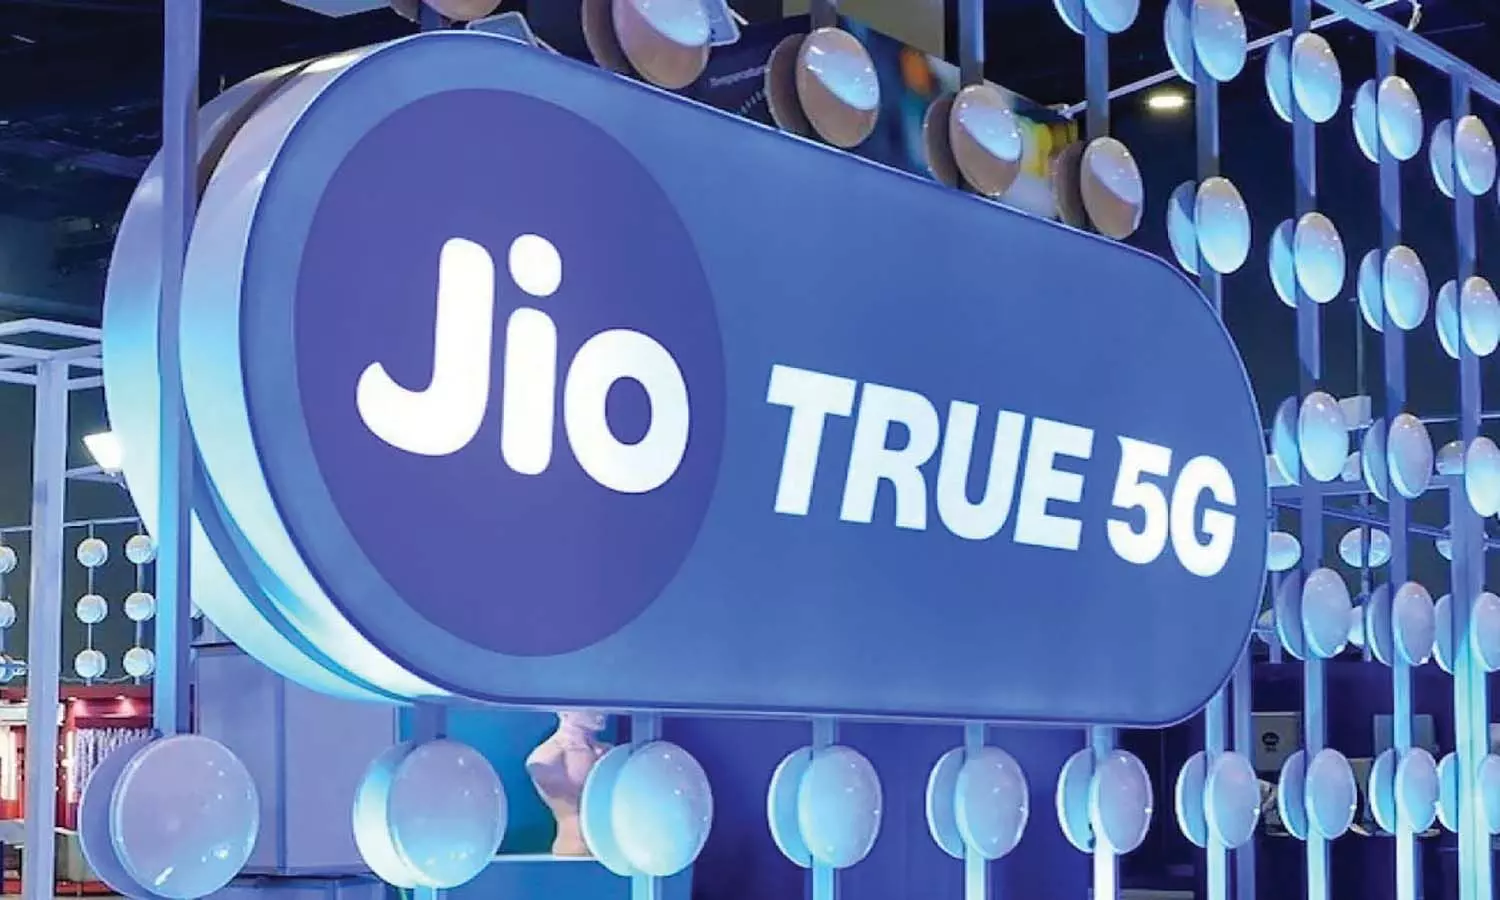 एमपी के इंदौर-भोपाल में Jio True 5G सेवा प्रारंभ, जबलपुर-ग्वालियर में जल्द होगी शुरुआत